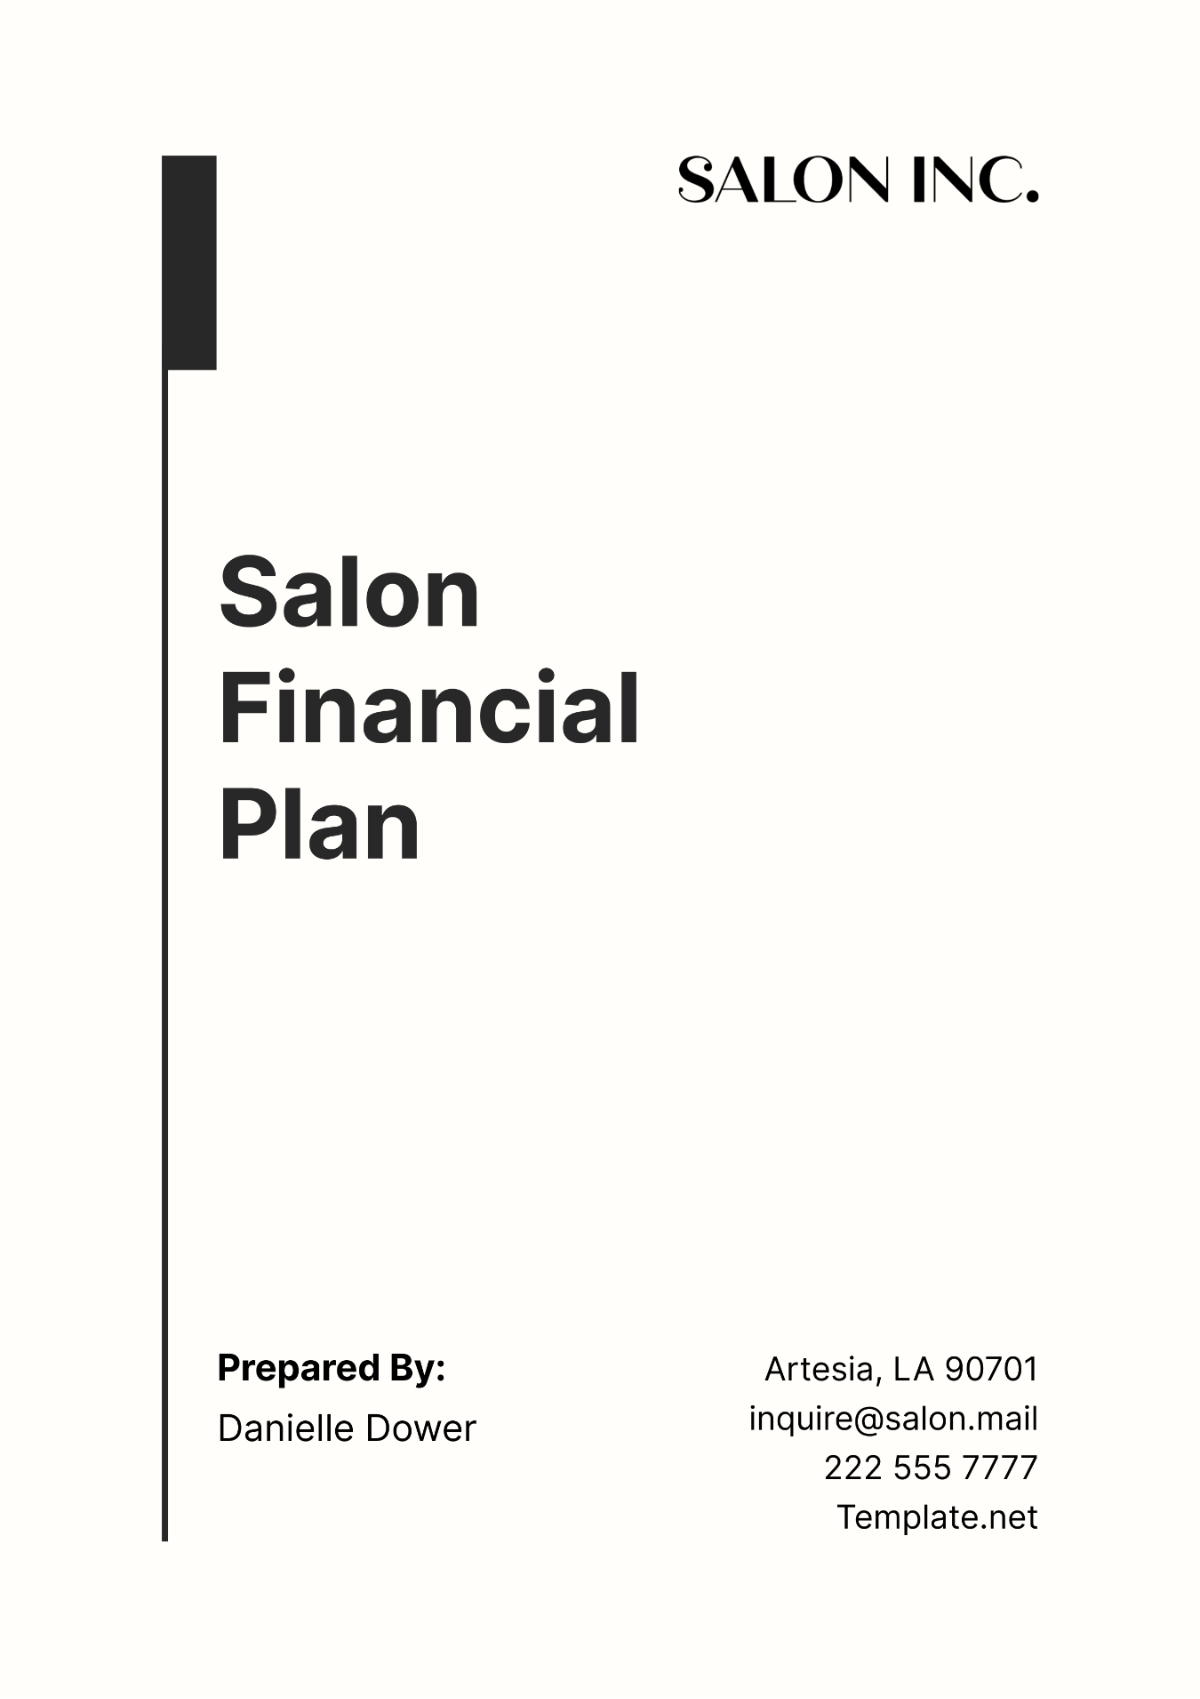 Salon Financial Plan Template